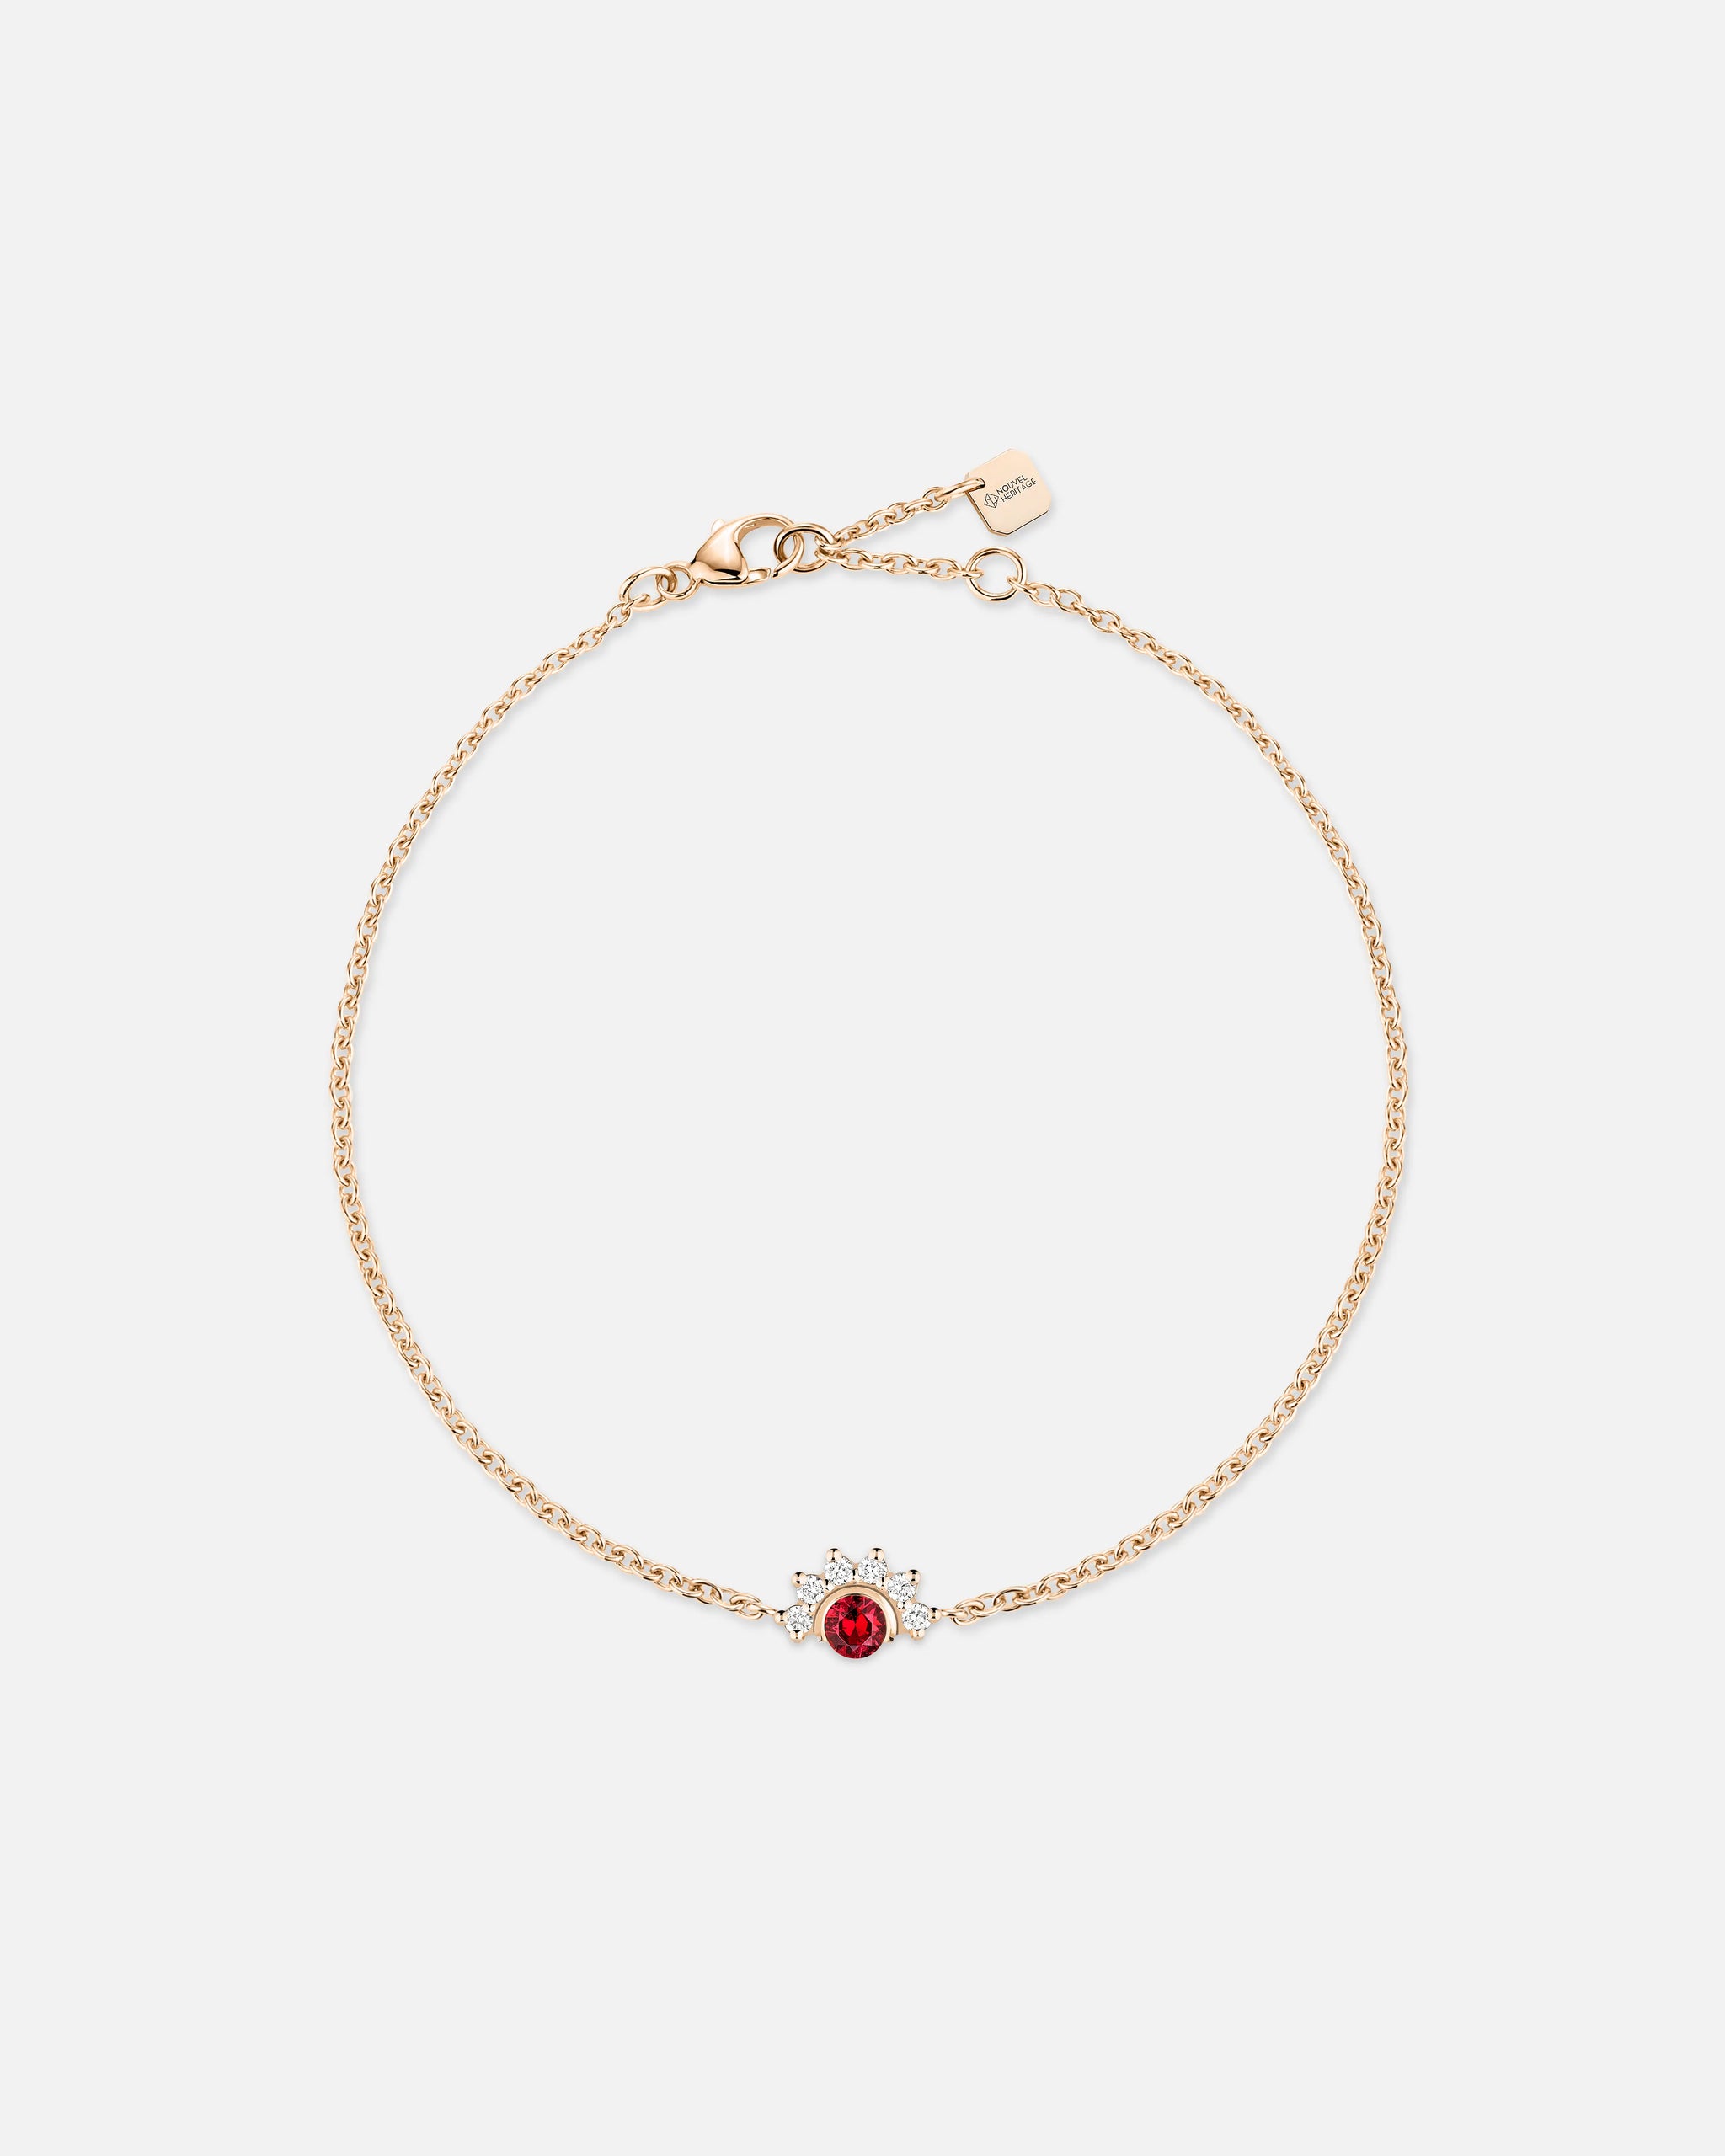 Bracelet Mystic Spinelle Rouge en Or Rose - 1 - Nouvel Heritage